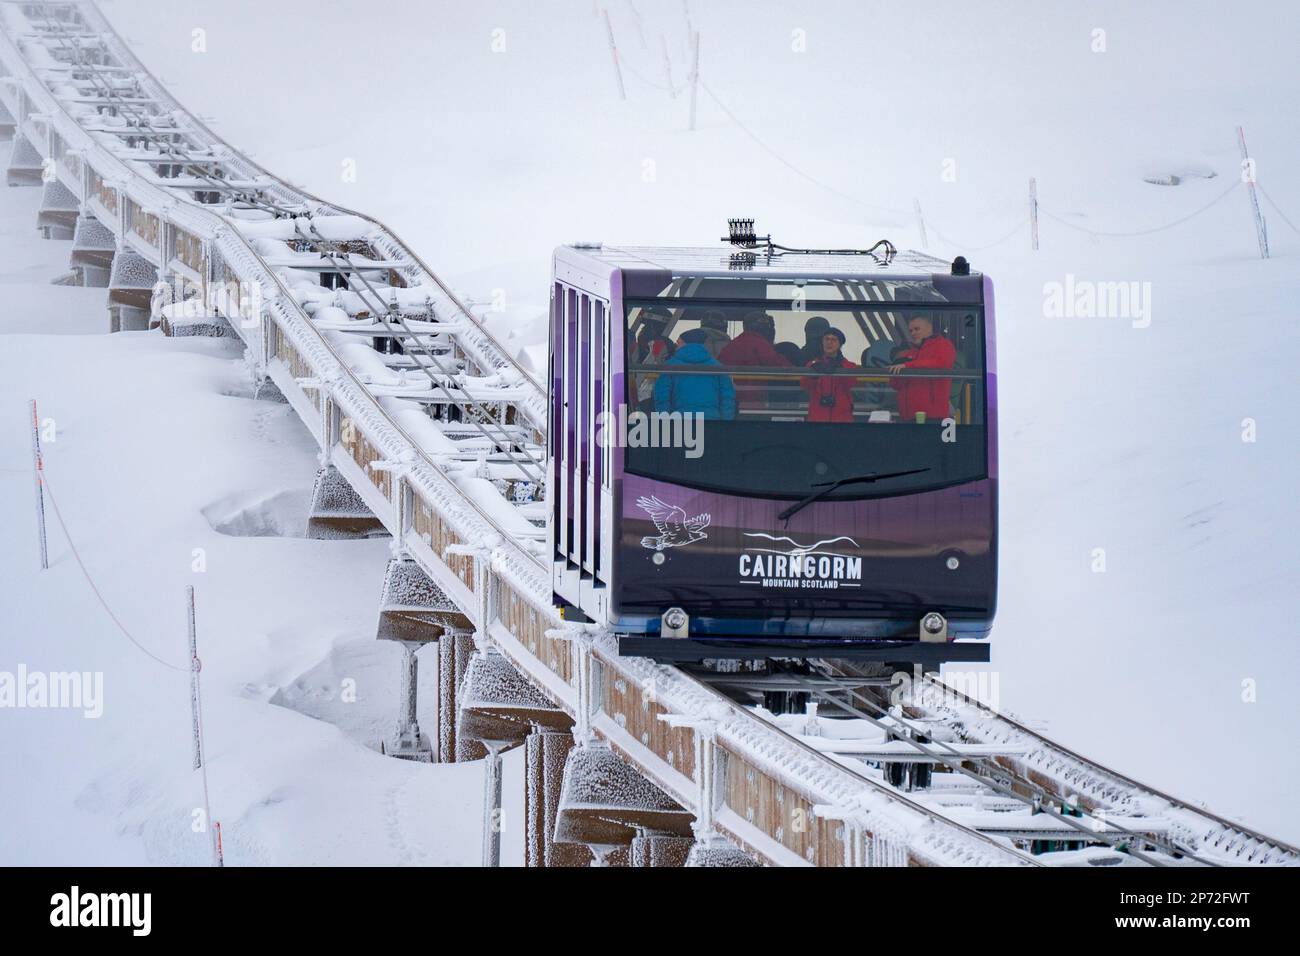 La nuova funicolare Cairngorm Mountain Railway, riaperta di recente, trasporta gli sciatori fino alle piste sciistiche della zona sciistica di Cairngorm, vicino ad Aviemore, Scozia, Regno Unito Foto Stock